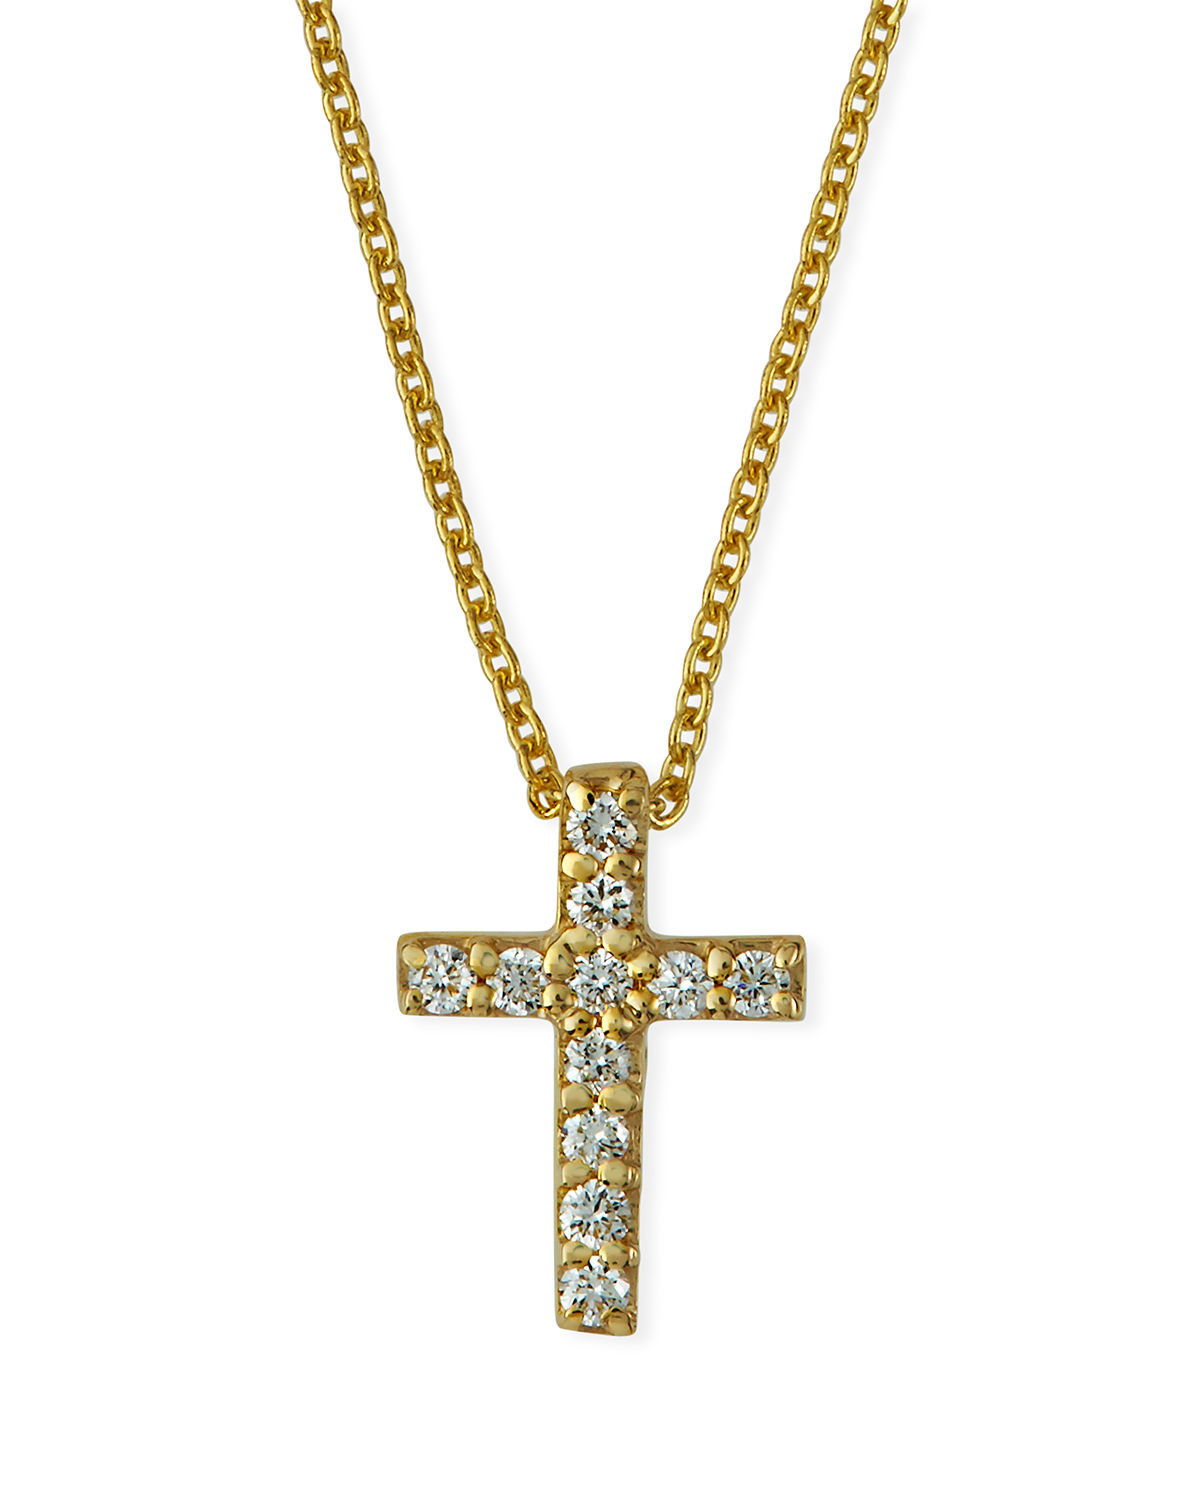 Small Diamond Cross Necklace
 Roberto Coin 18k Small Diamond Cross Pendant Necklace